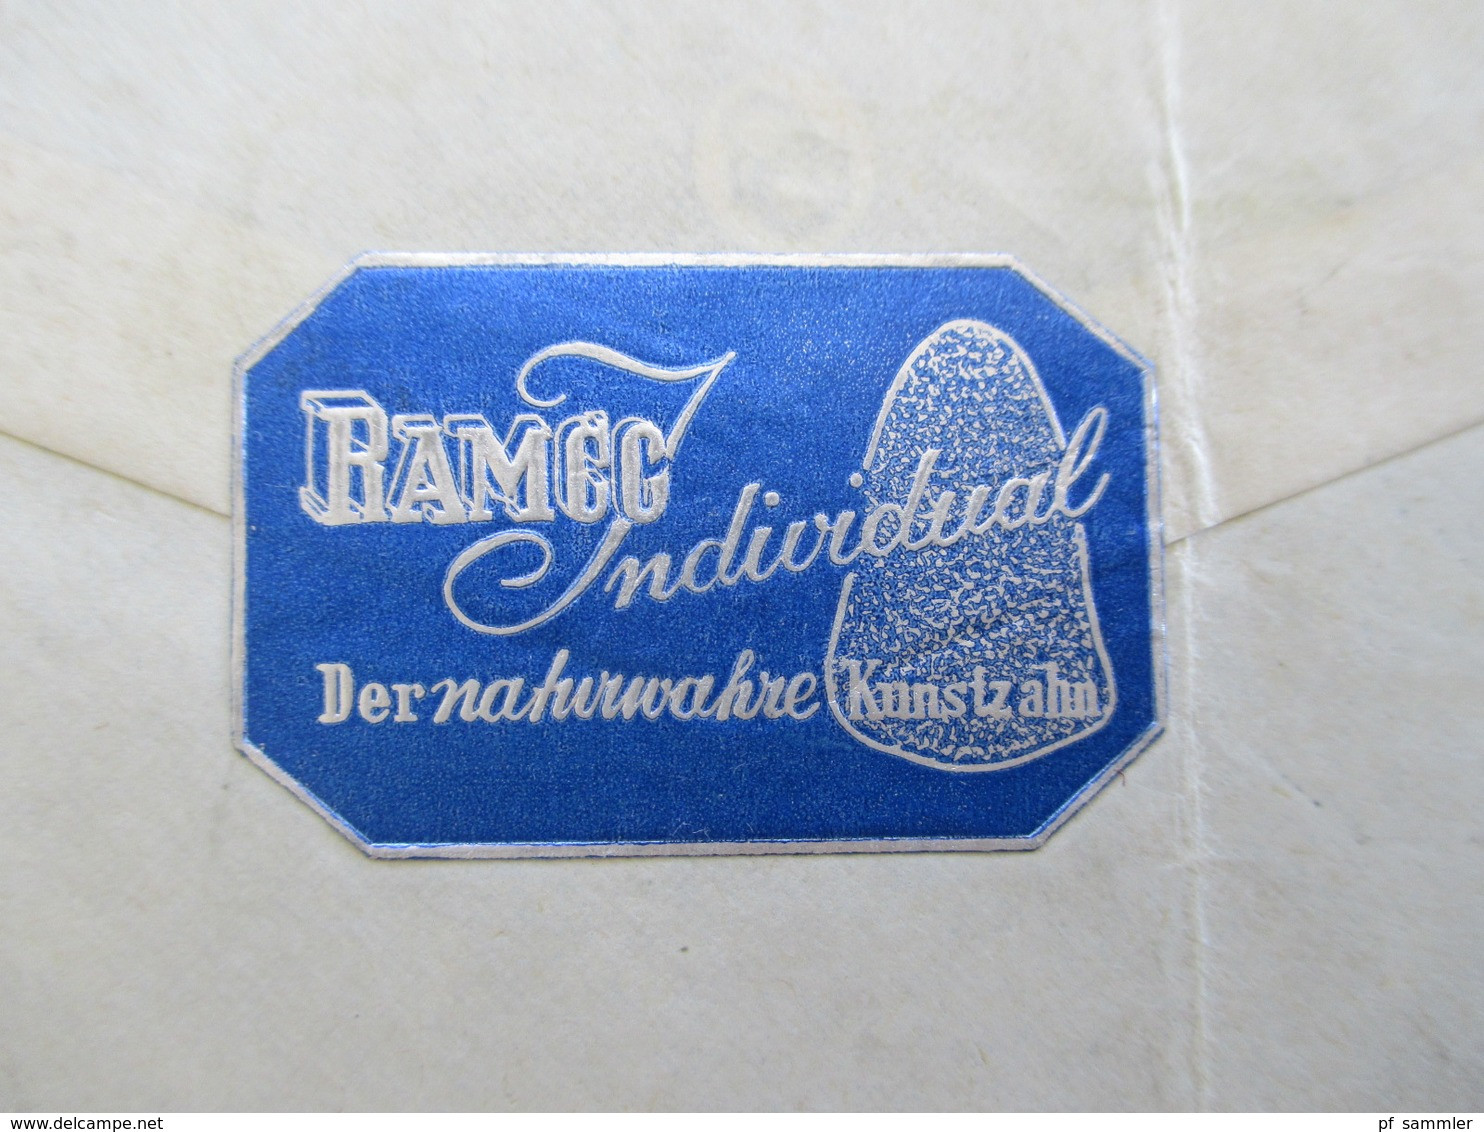 Liechtenstein 1943 Einschreiben mit OKW Mehrfachzensur S.A. Ramco Fabrique de dents artificielles / Vignette Kunstzahn